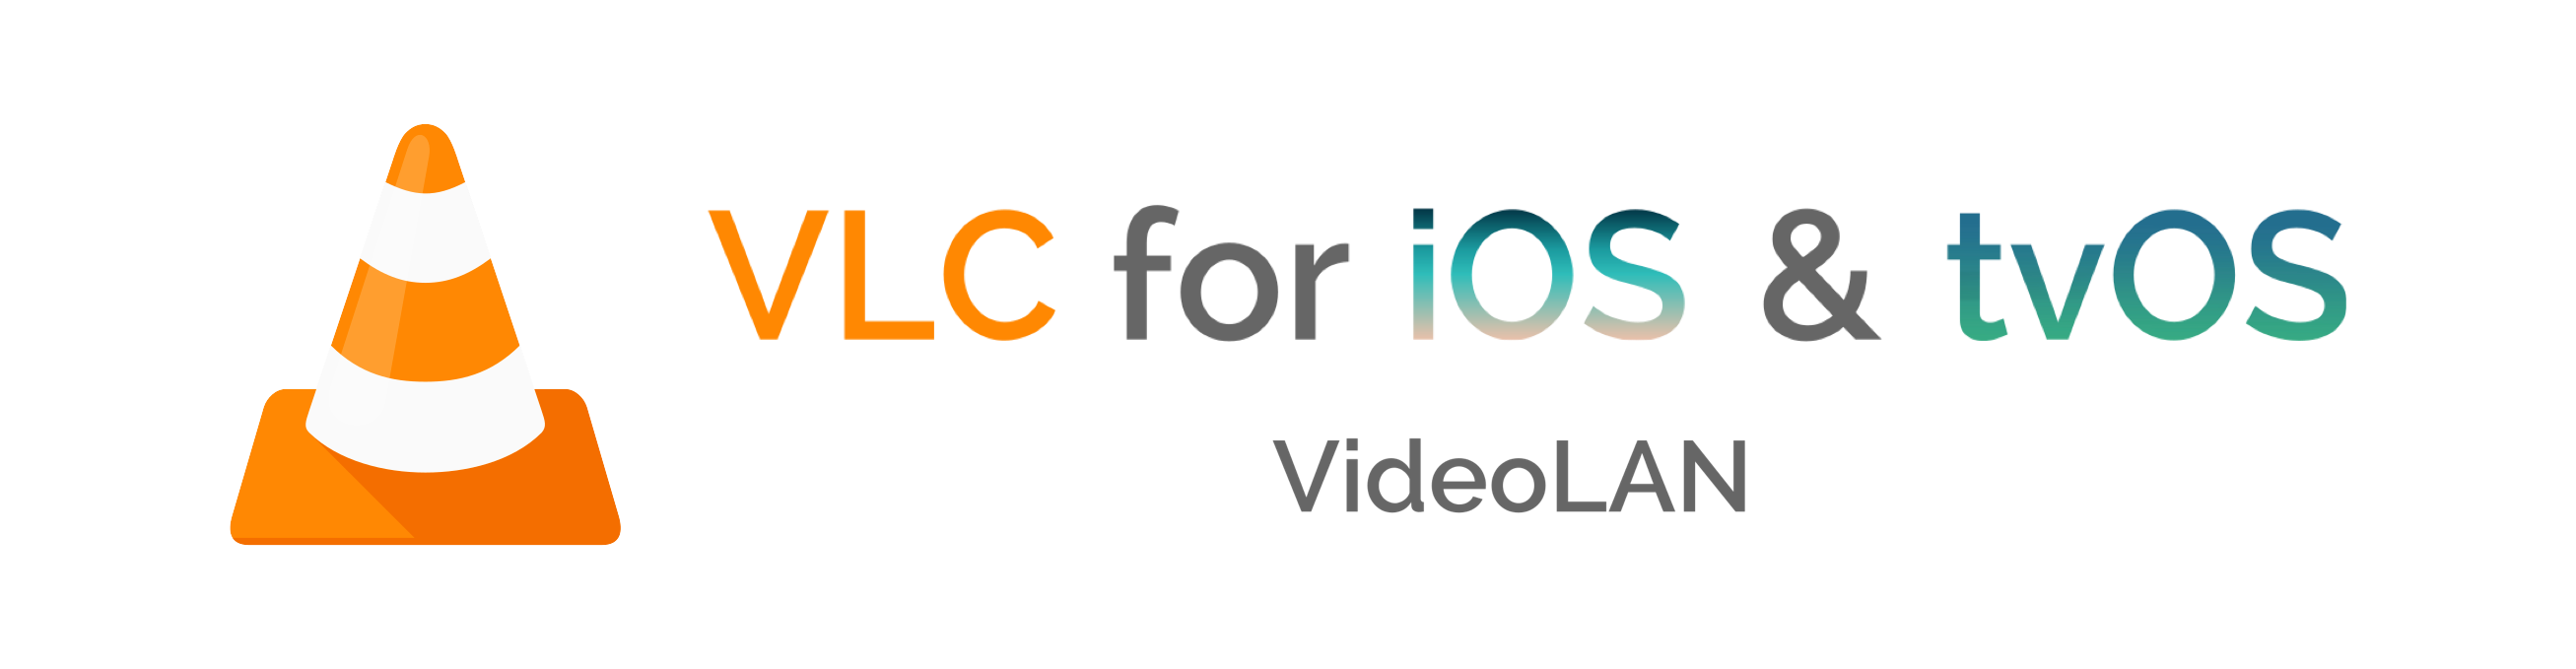 VLC-iOS banner